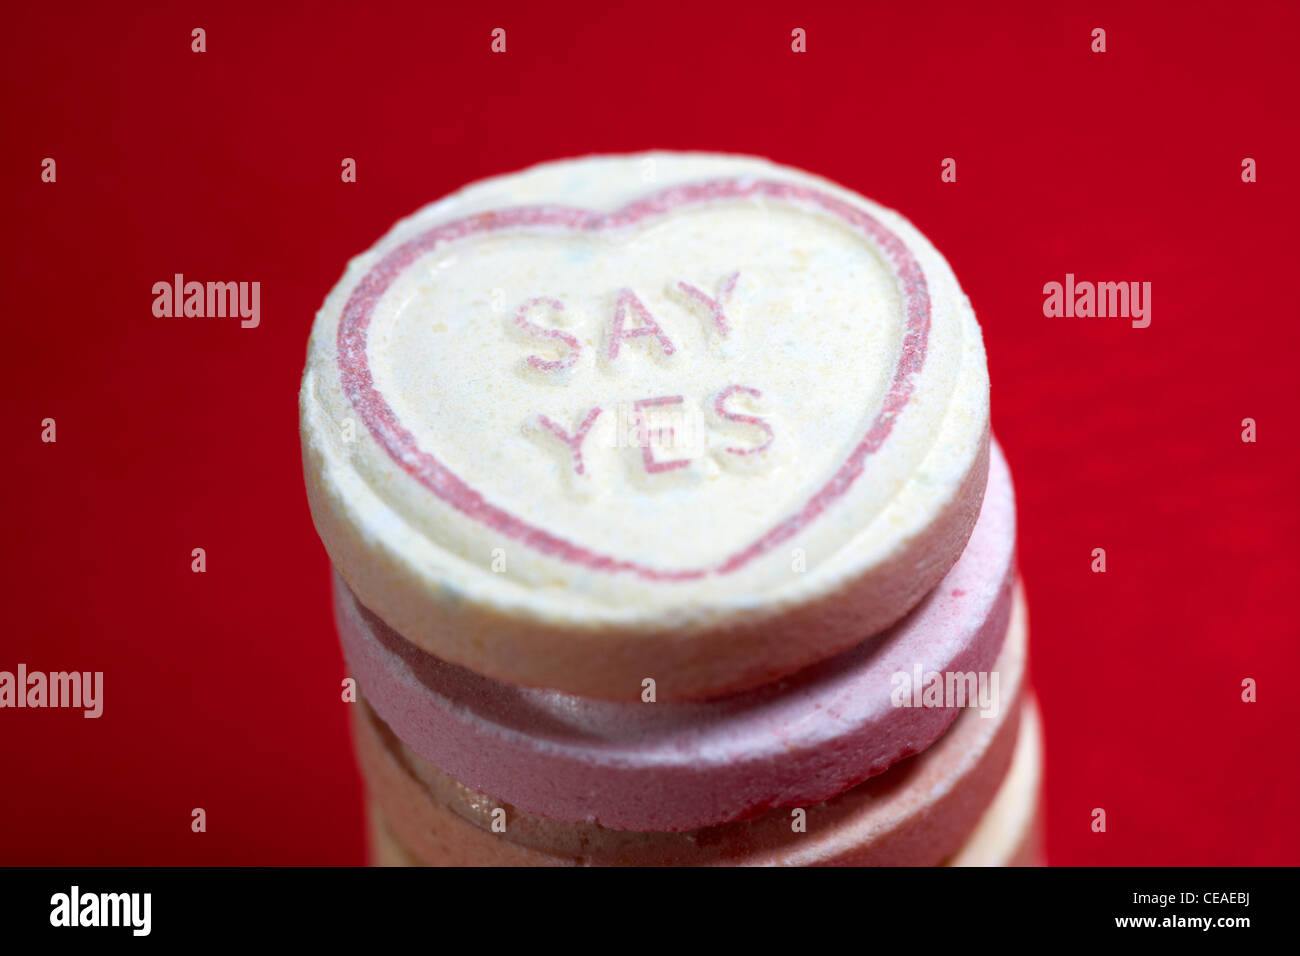 Dire sì proposta di matrimonio amore cuore dolce su sfondo rosso Foto Stock